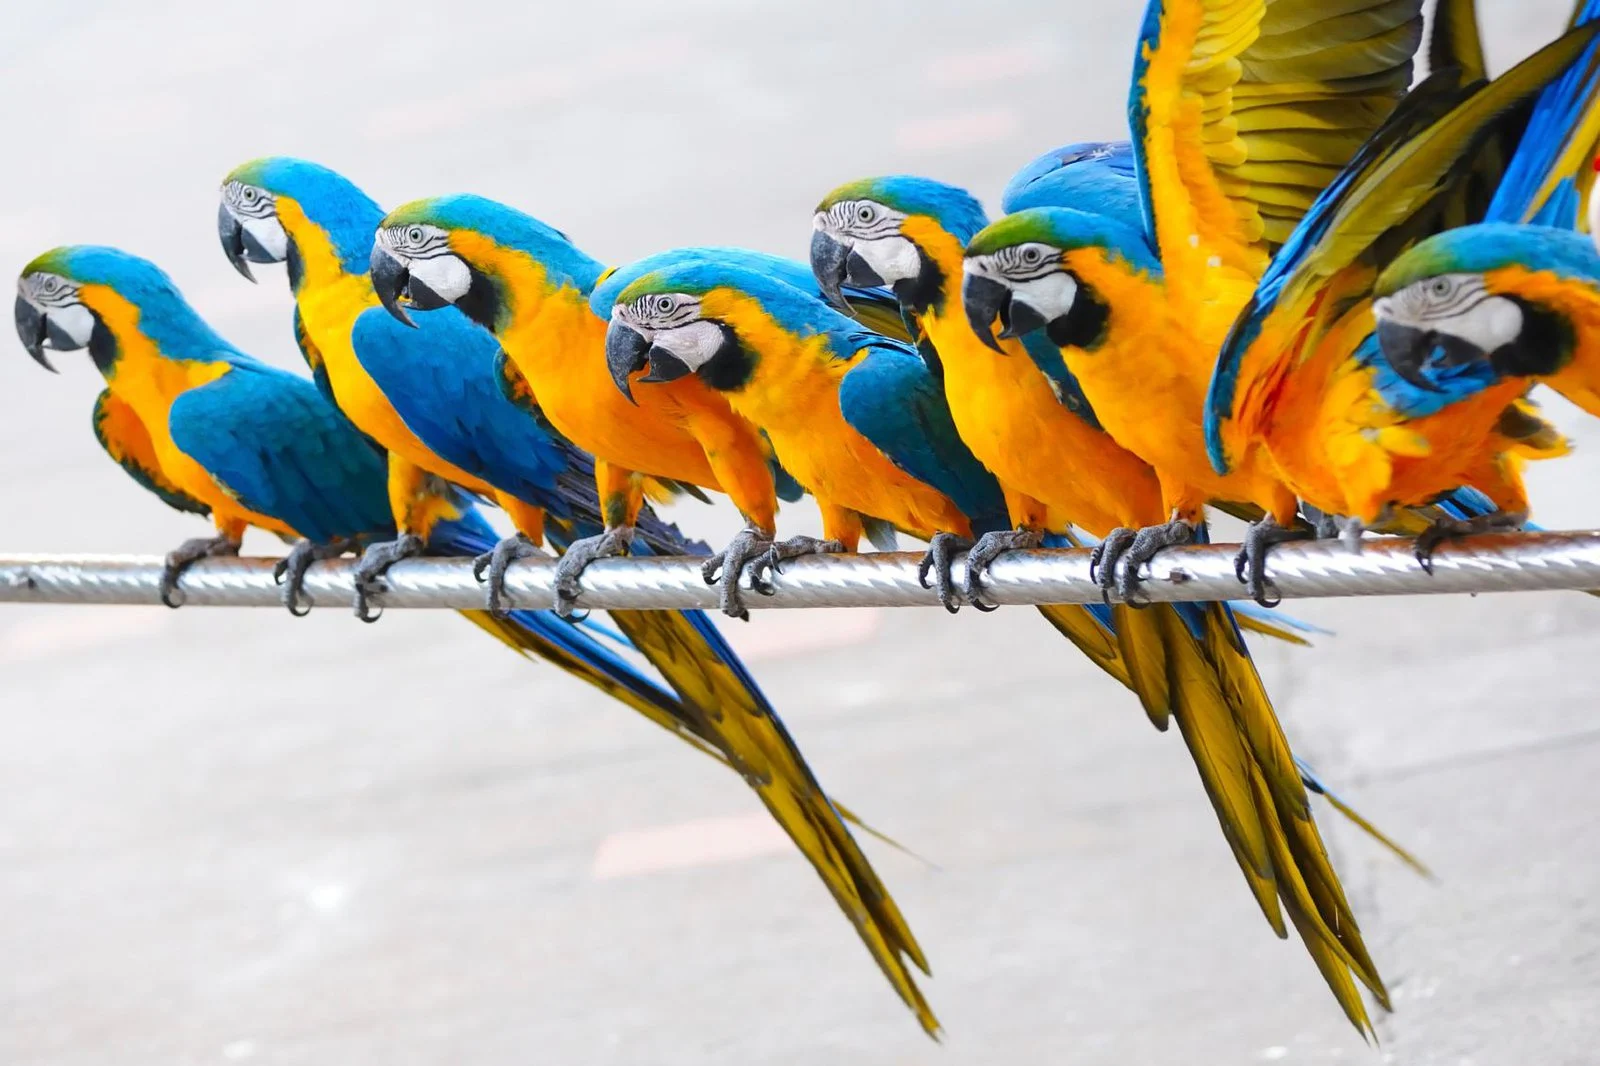 12-facts-about-parrots